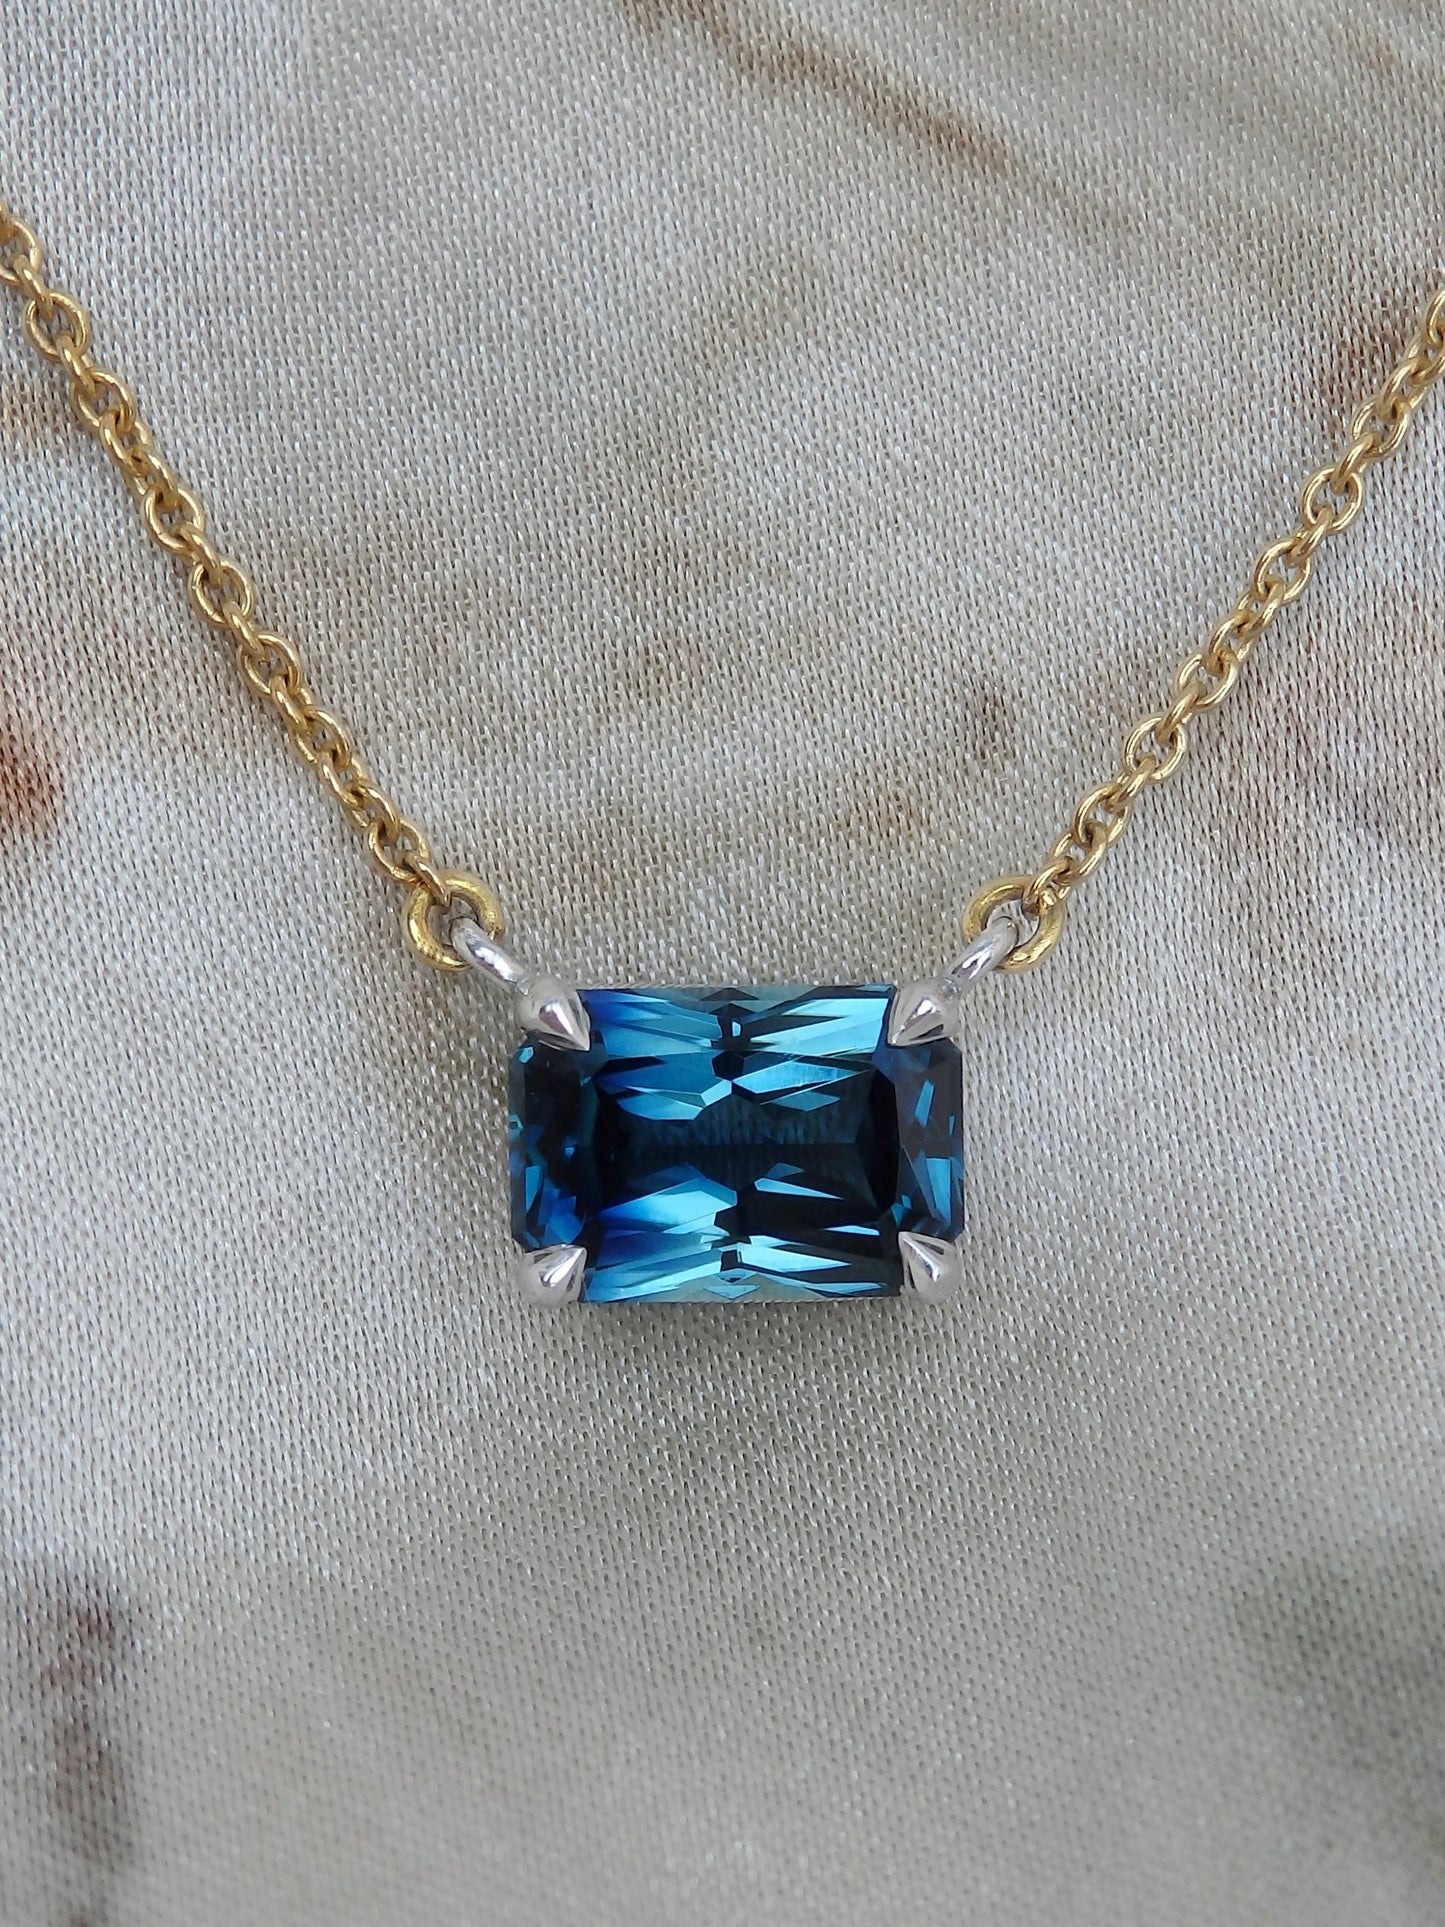 1.63ct Radiant Cut Blue Australian Sapphire, Platinum & 18ct Gold Necklace